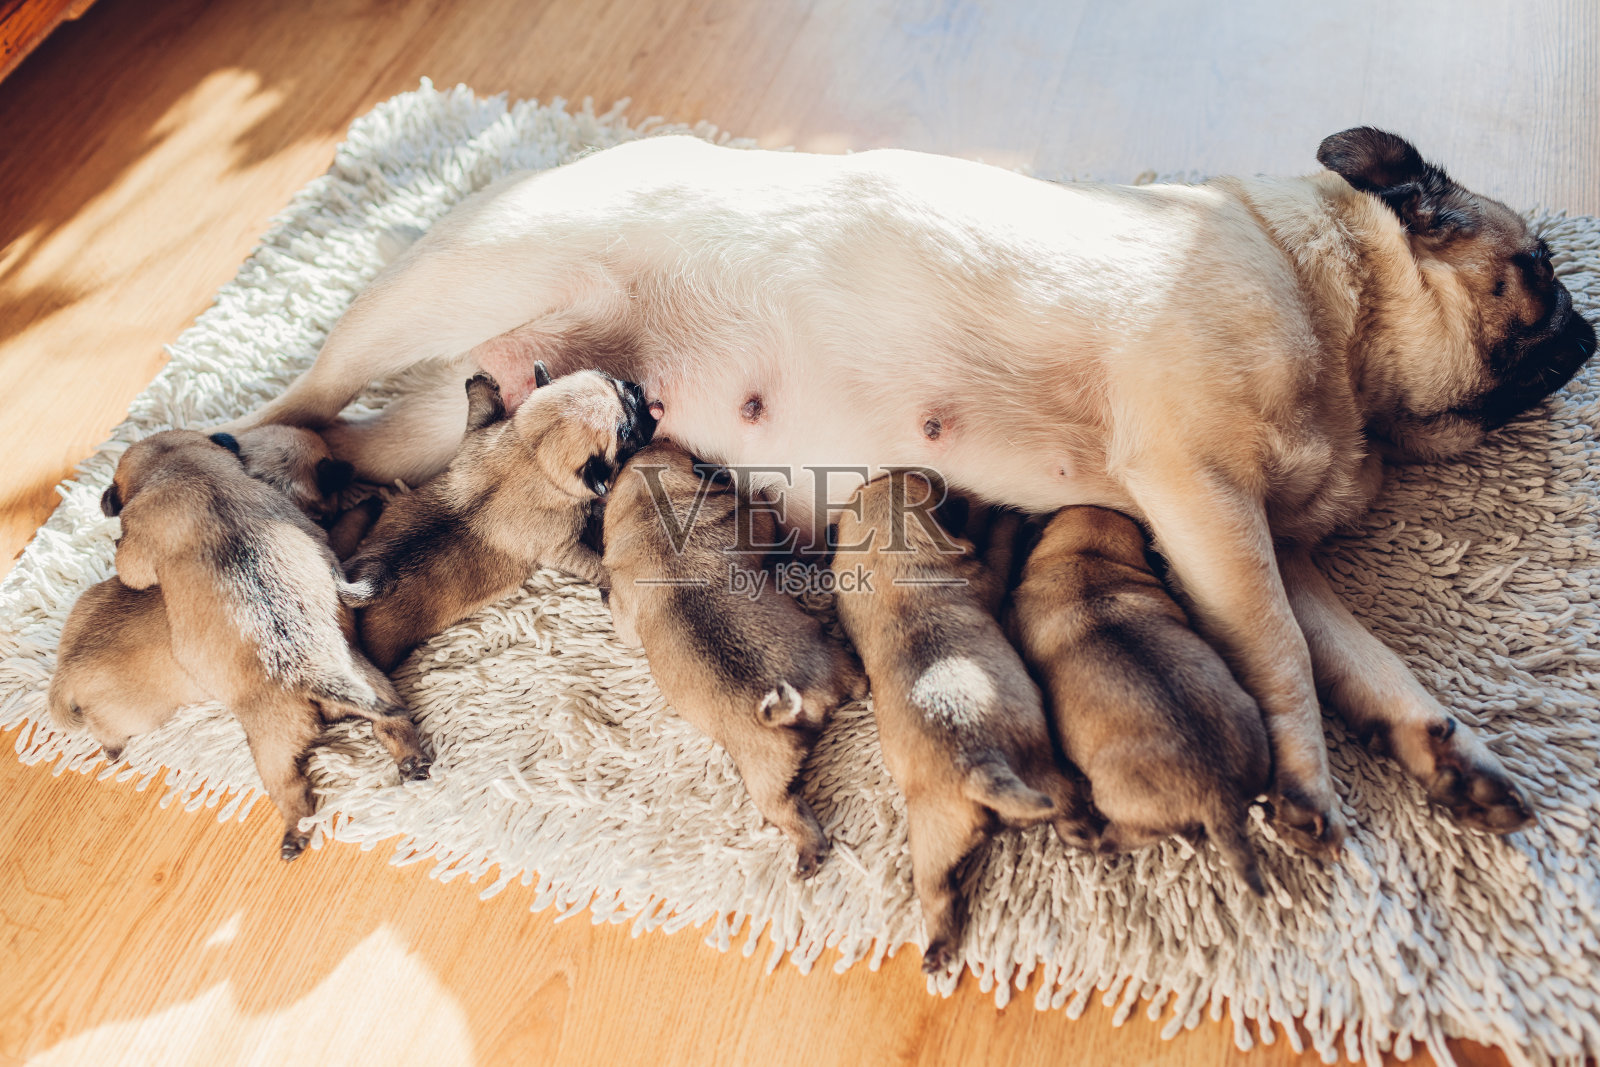 哈巴狗在家喂六只小狗。狗和孩子们躺在地毯上照片摄影图片